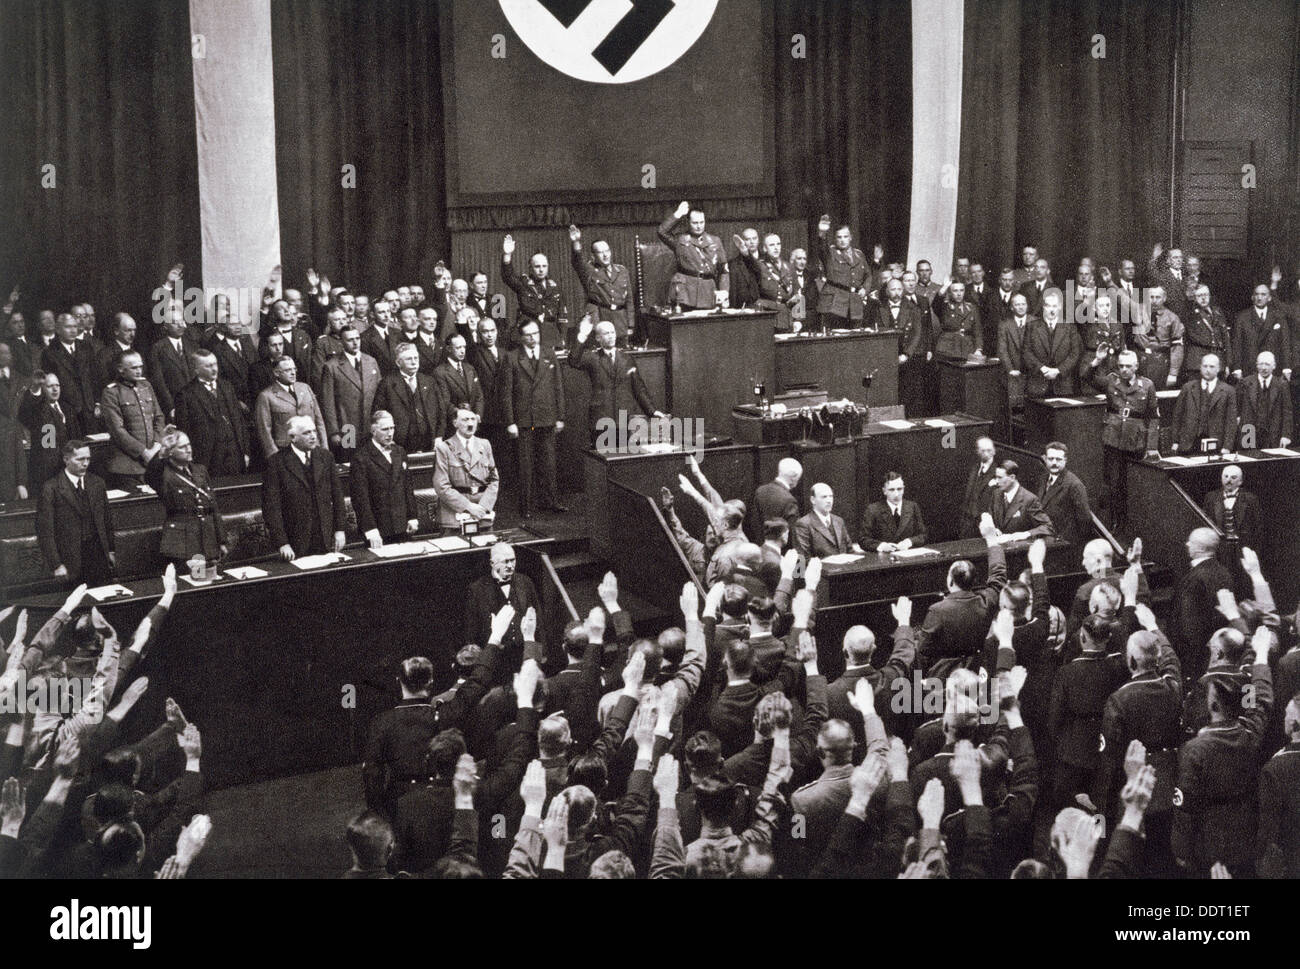 Le chancelier Adolf Hitler fait un discours devant le Reichstag, Berlin, 17 mai 1933. Artiste : Inconnu Banque D'Images